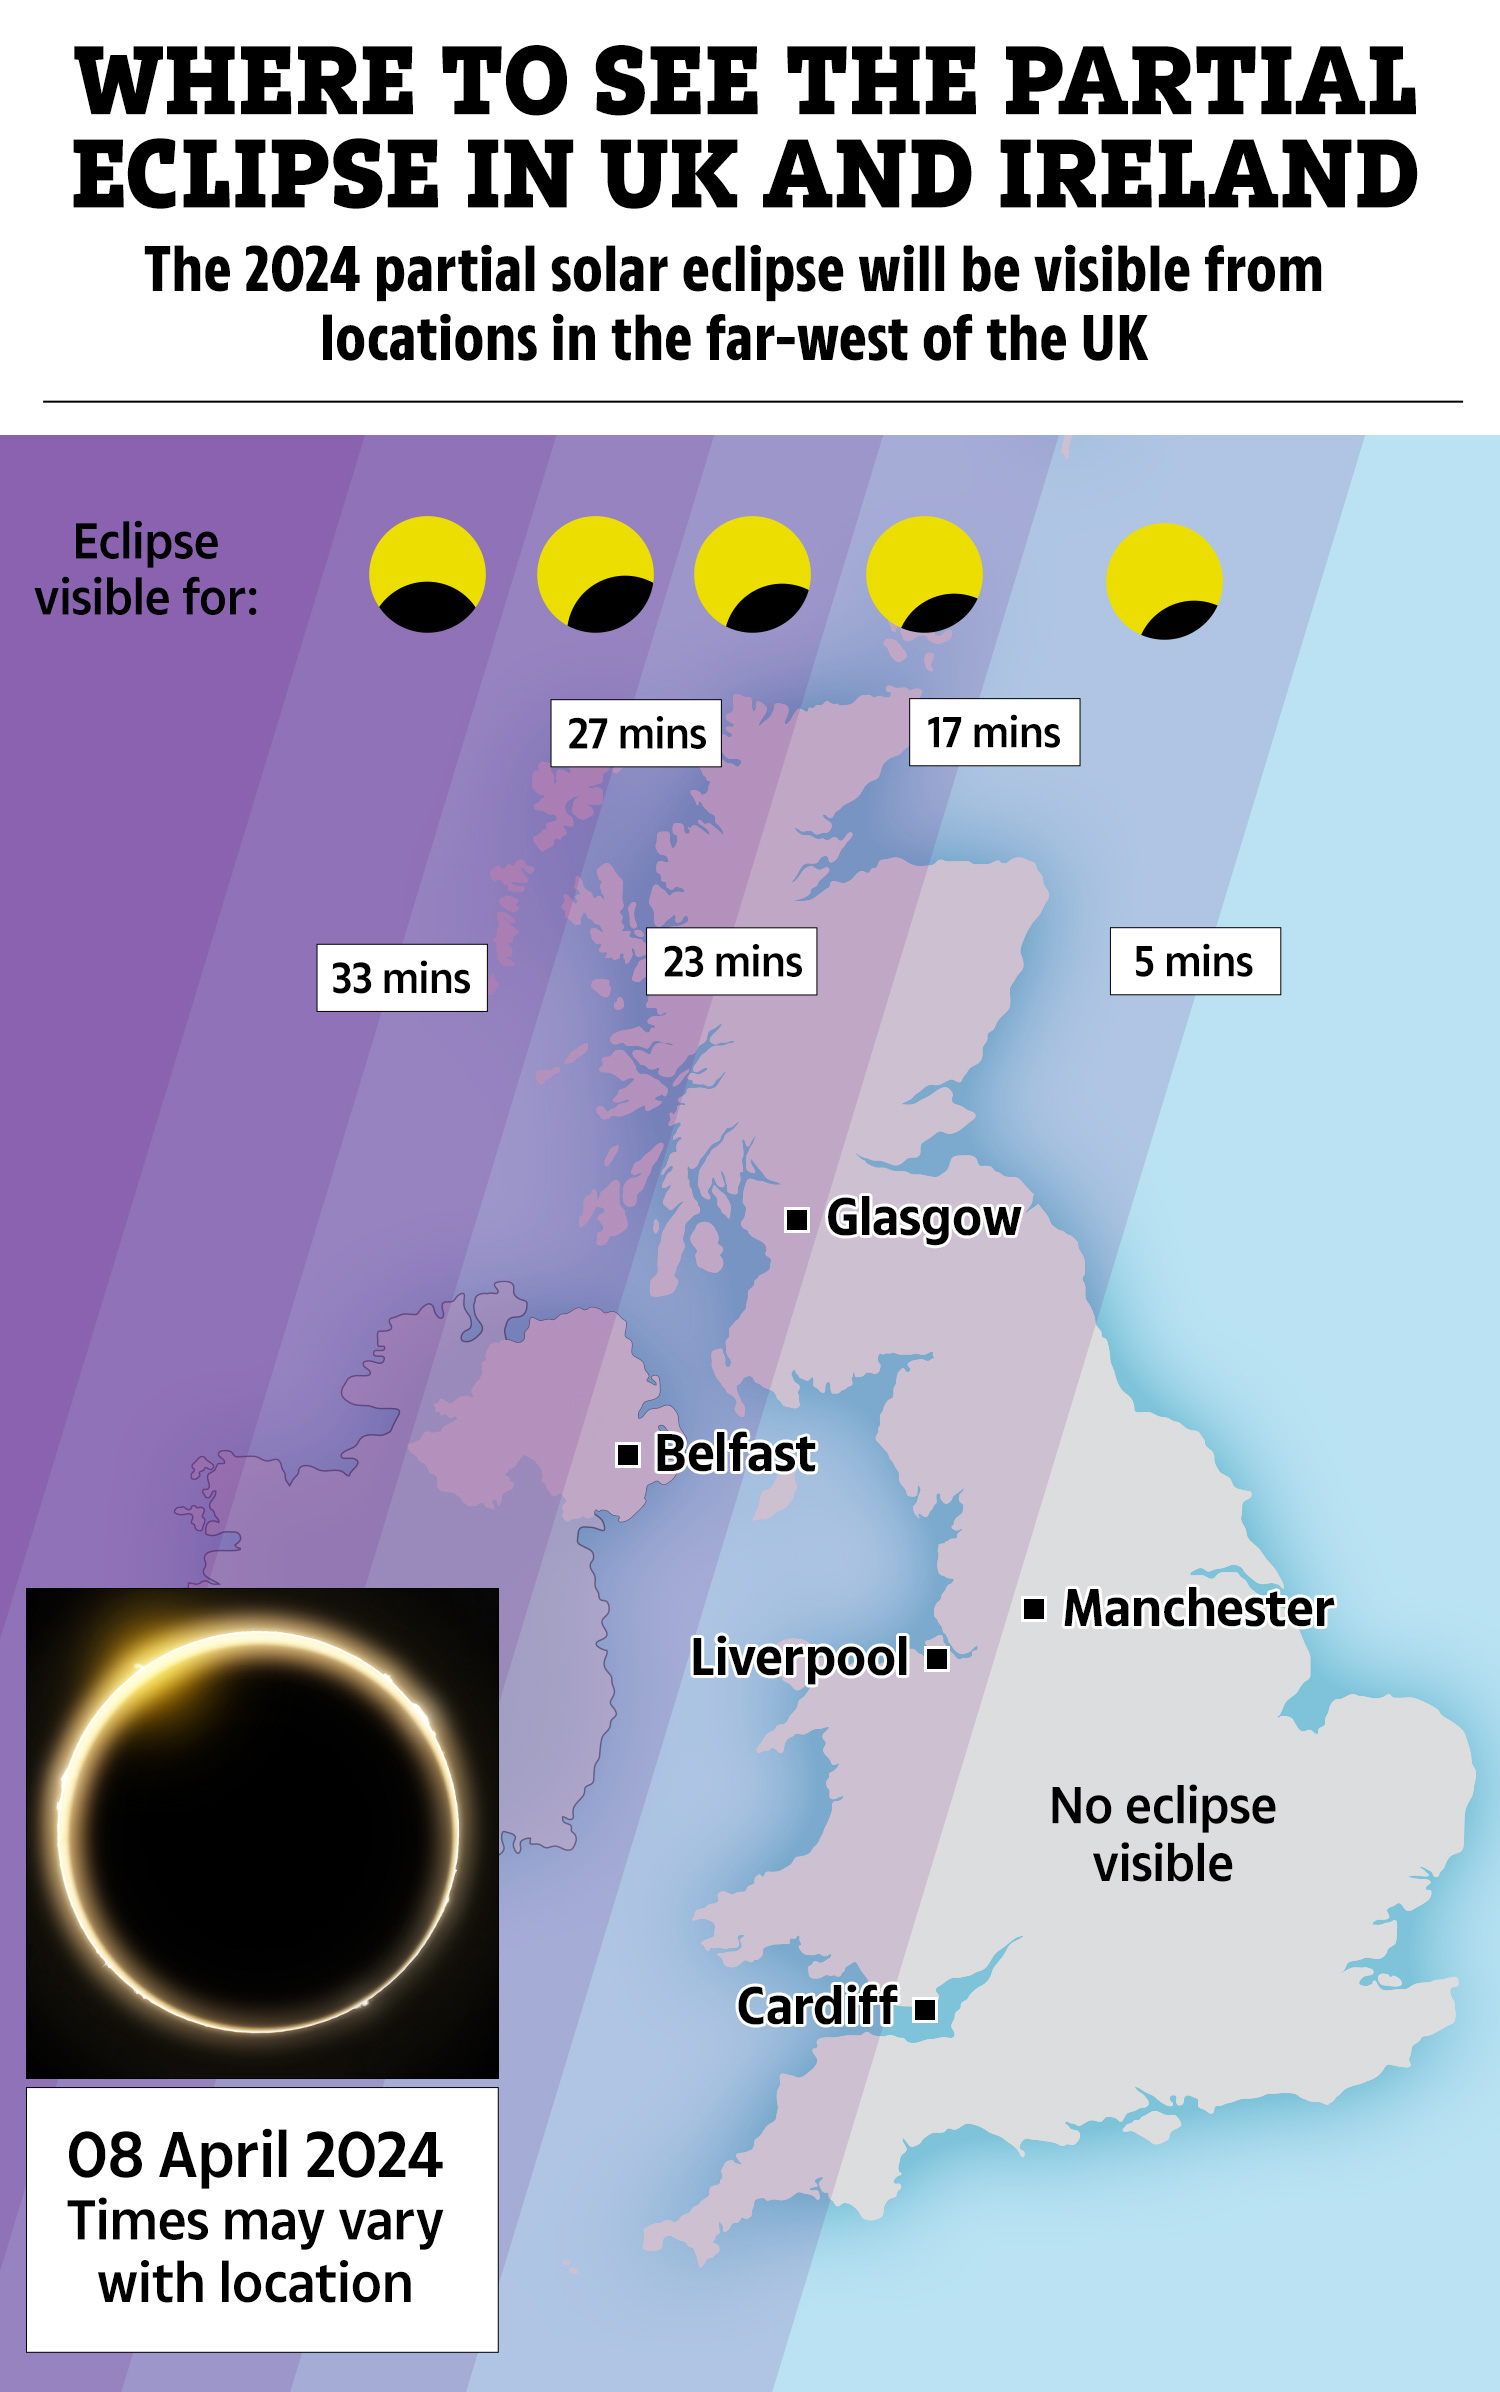 Während die westlichen Gebiete des Vereinigten Königreichs und Nordirlands nur eine teilweise Sonnenfinsternis erleben werden, werden Teile Nordamerikas das volle Spektakel genießen